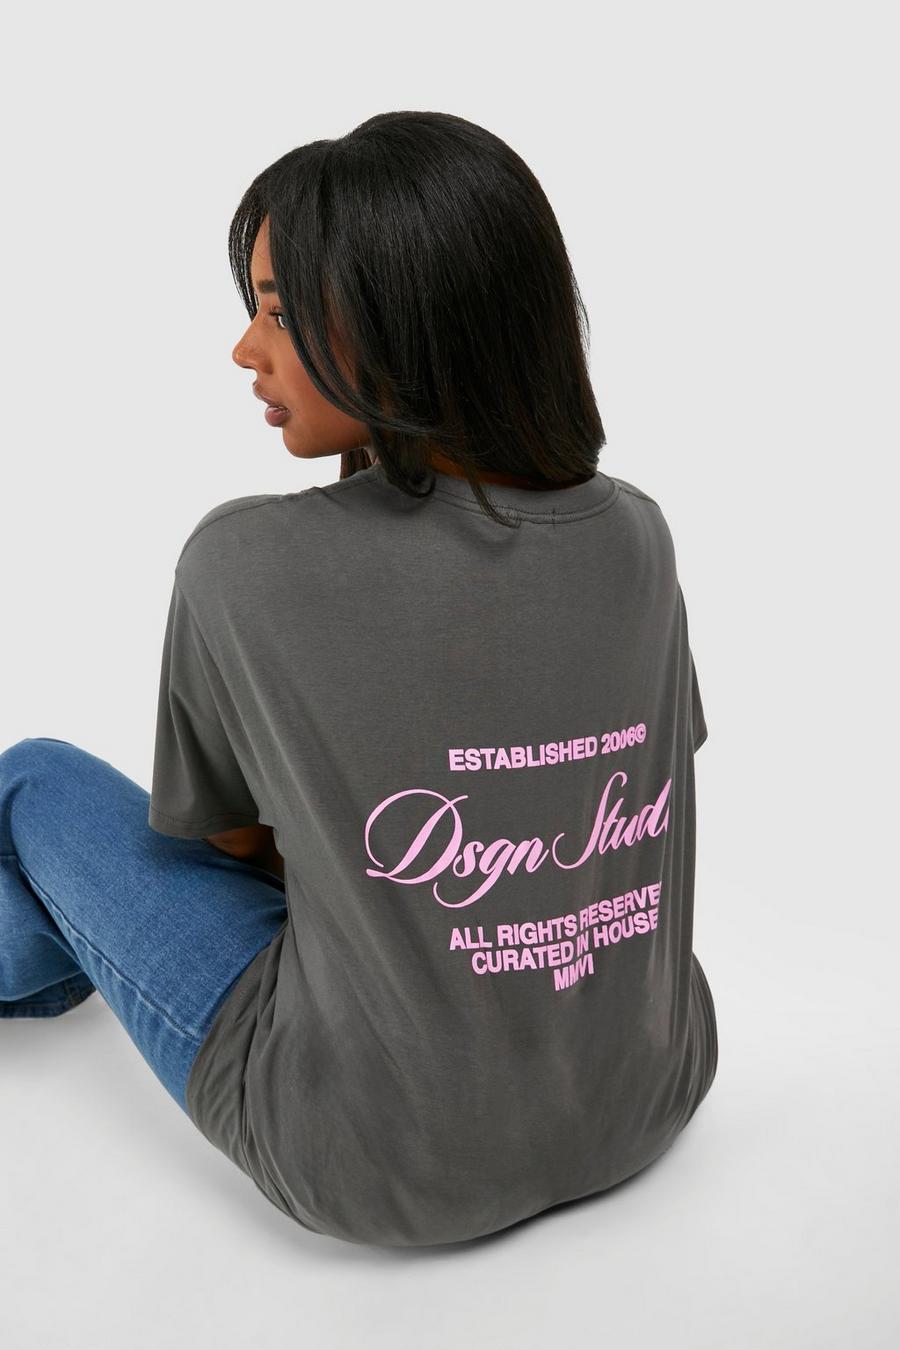 Camiseta Plus con estampado Dsgn Studio en la espalda, Charcoal